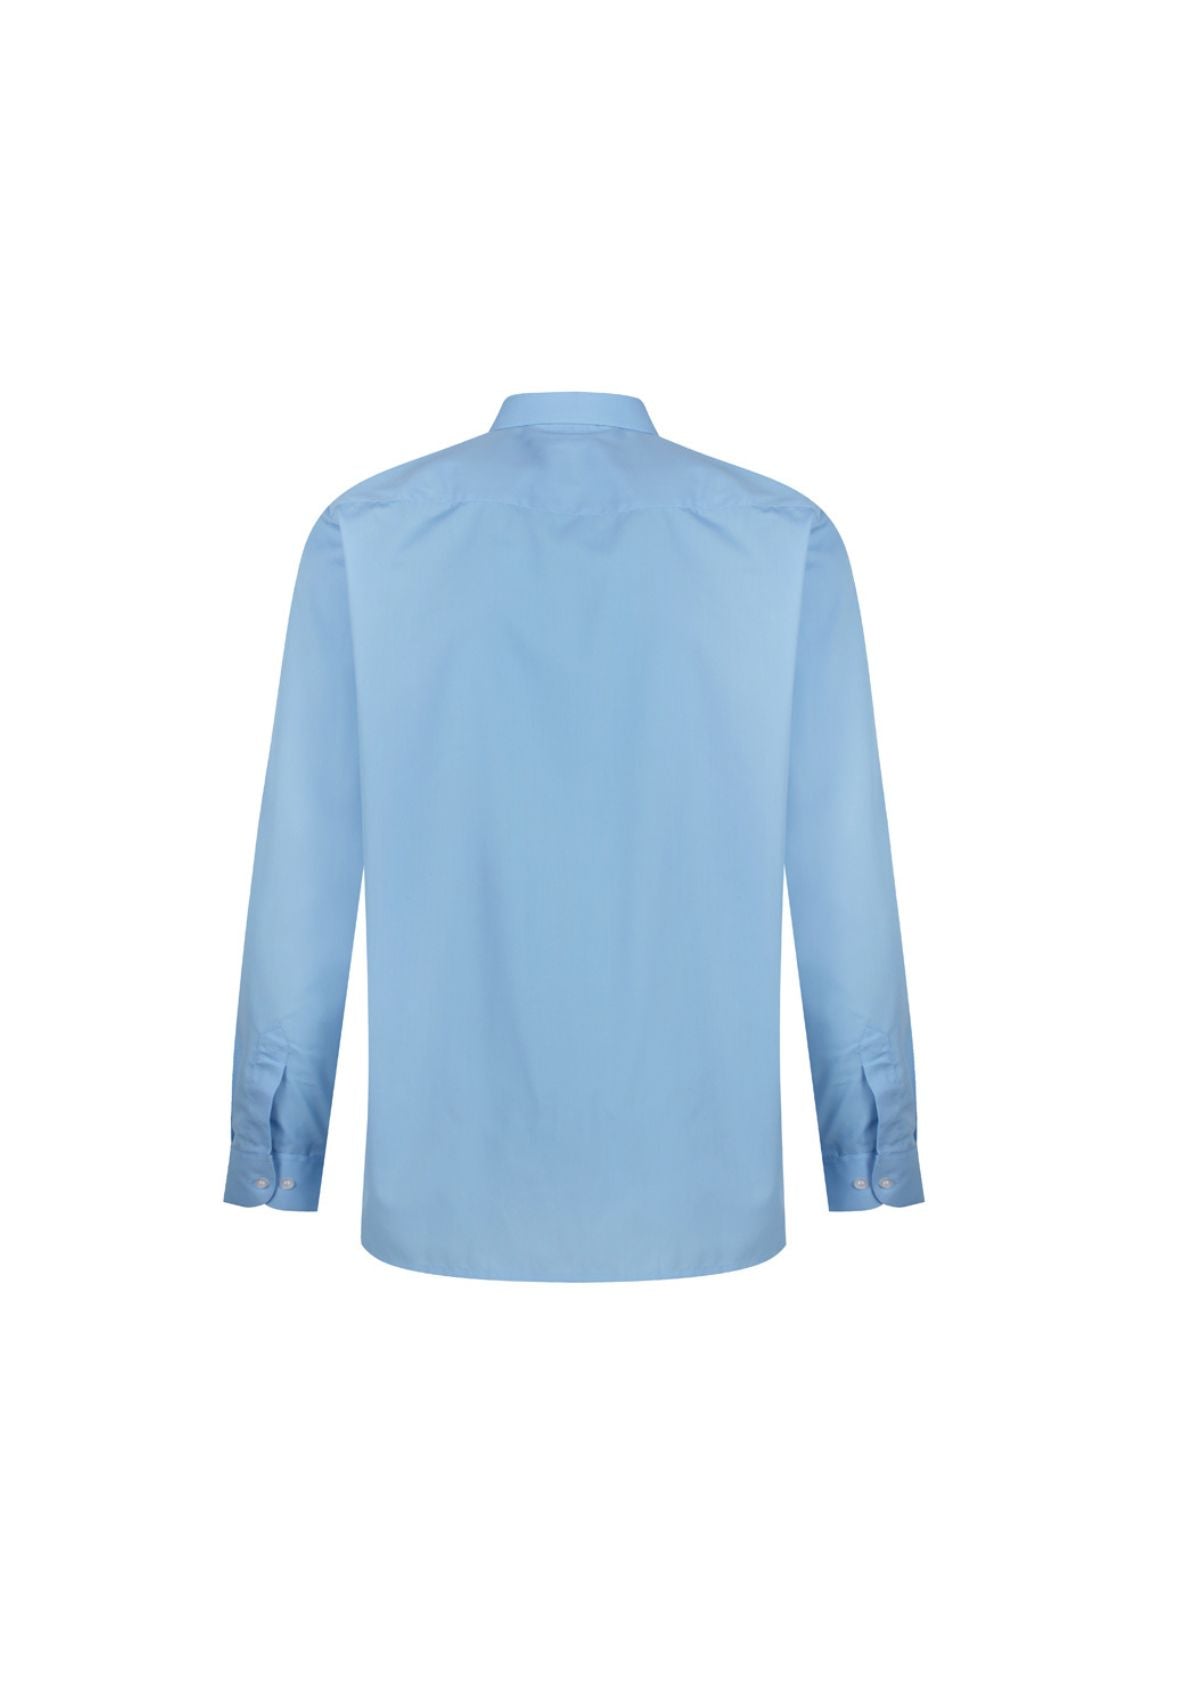 1880 Clue Blue Shirt